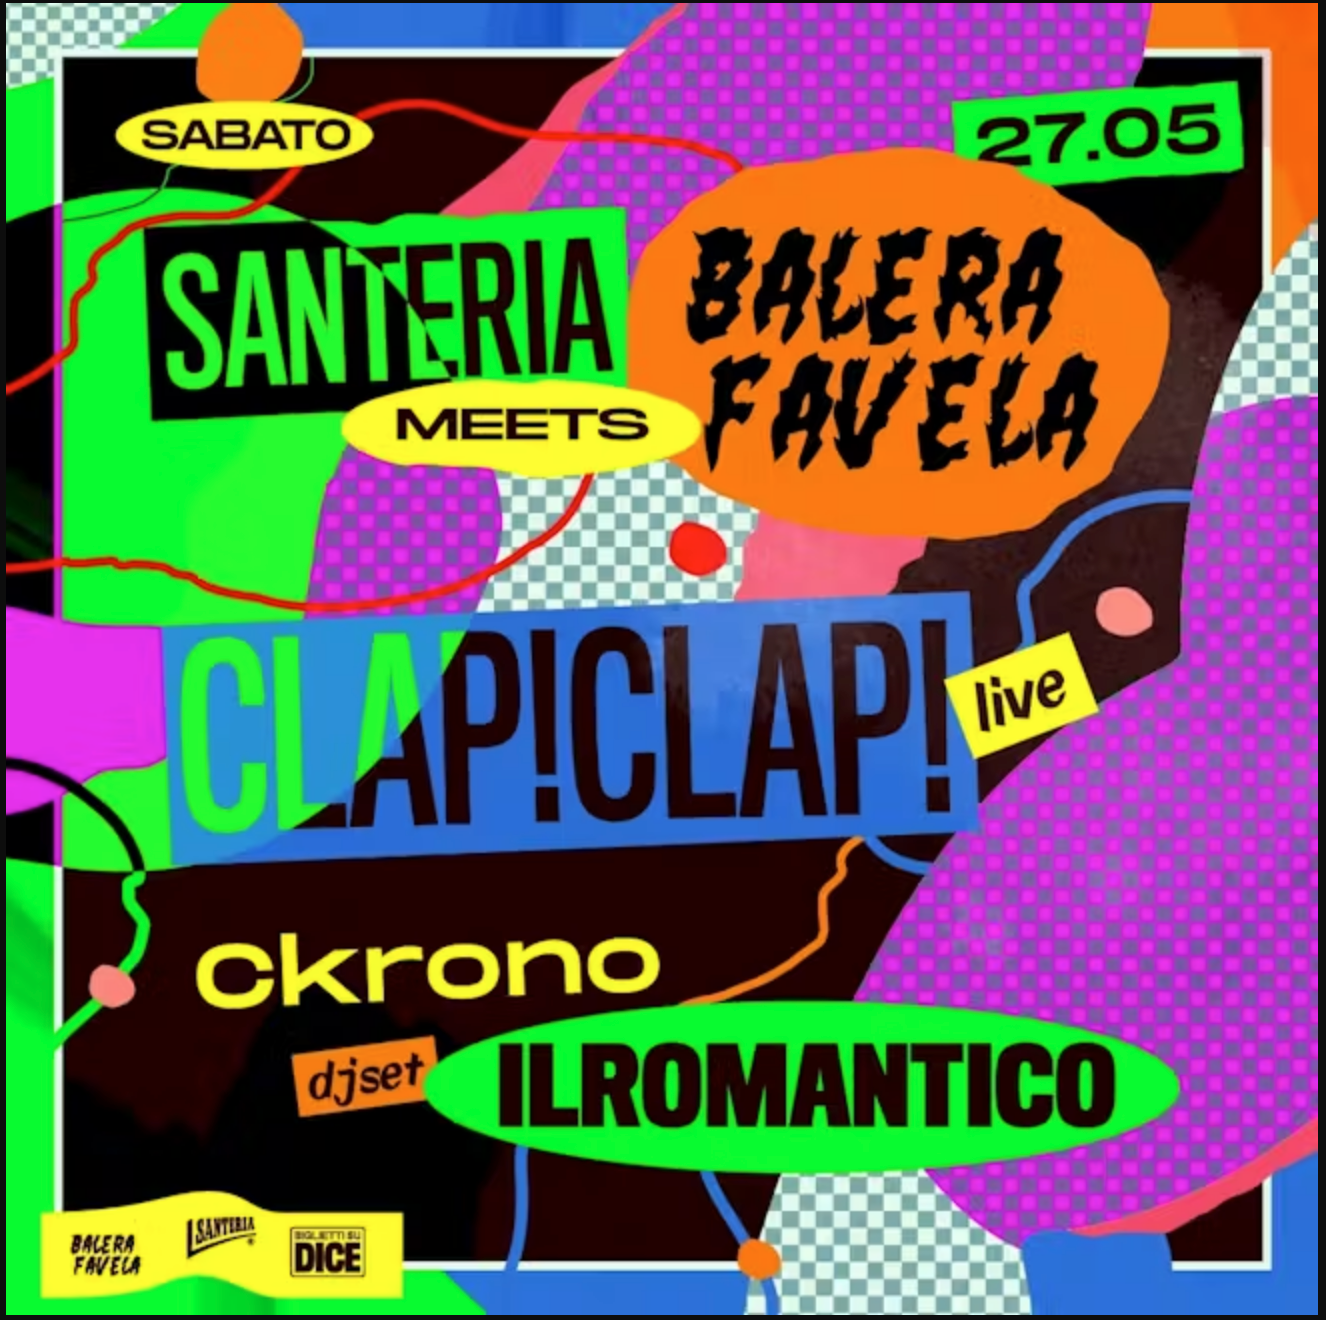 Balera Favela meets Santeria w/ Clap! Clap! live - Página frontal